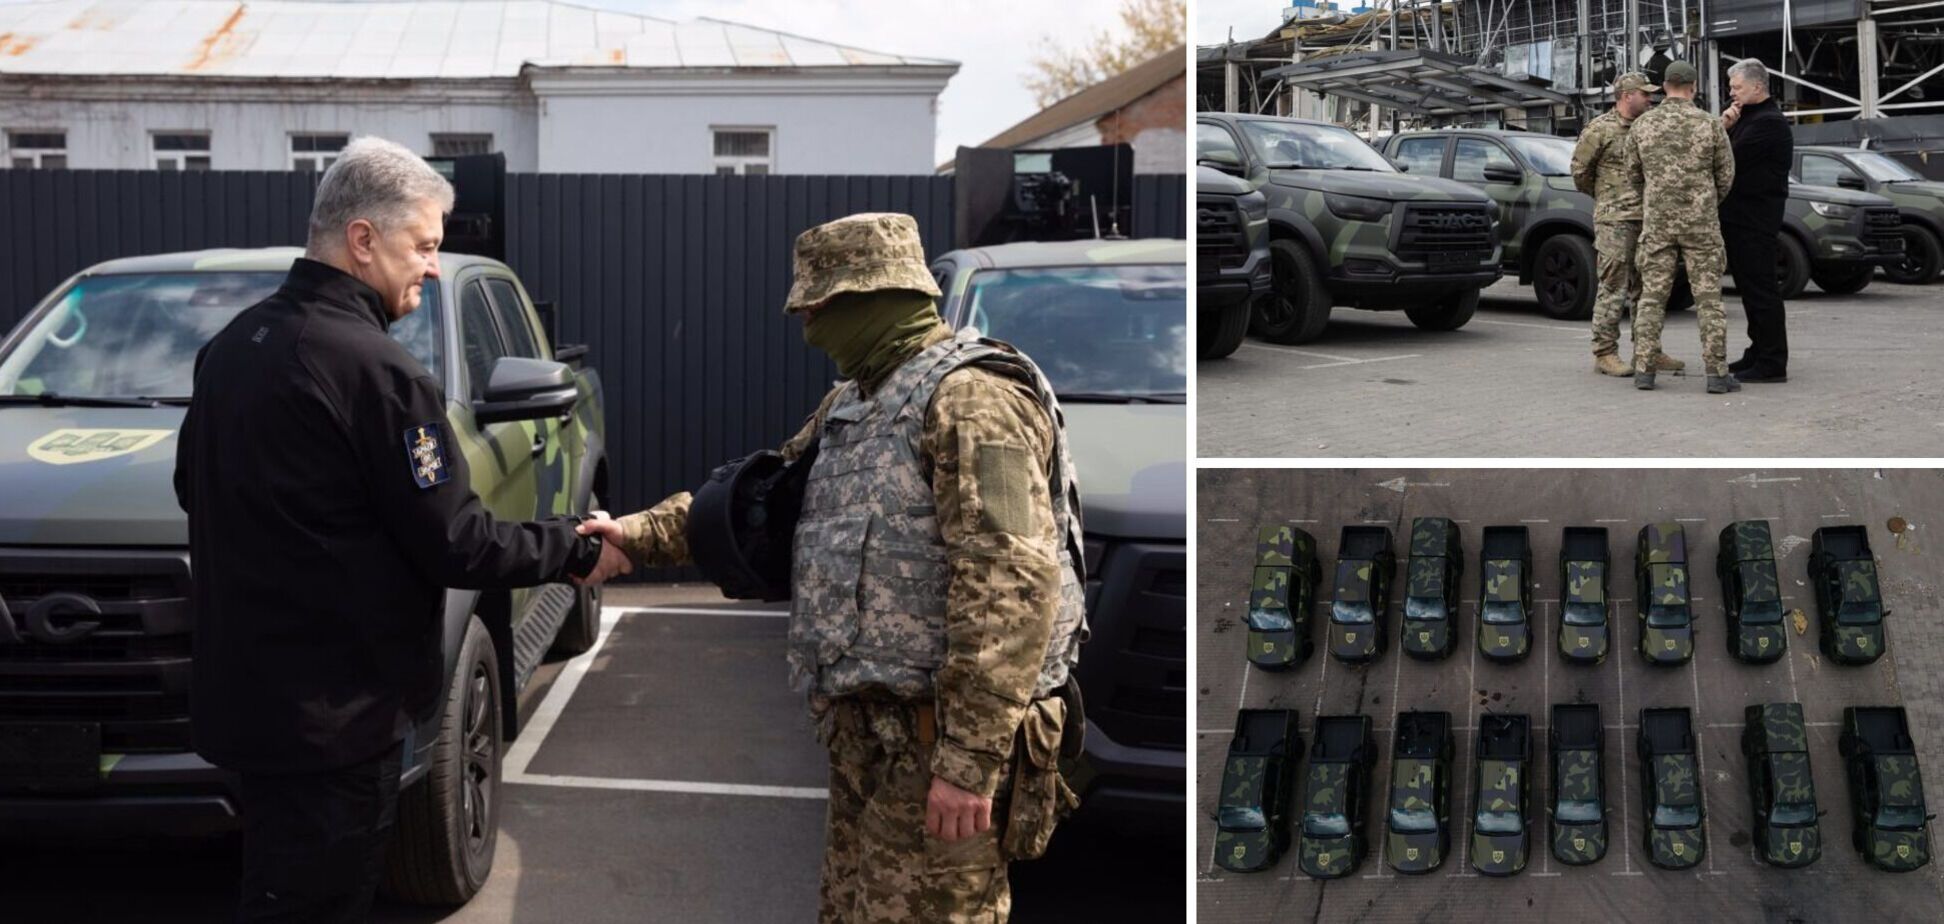 Фонд Порошенко вместе с волонтерами передали десантникам на фронт 18 новых пикапов, подготовленных для боевых условий